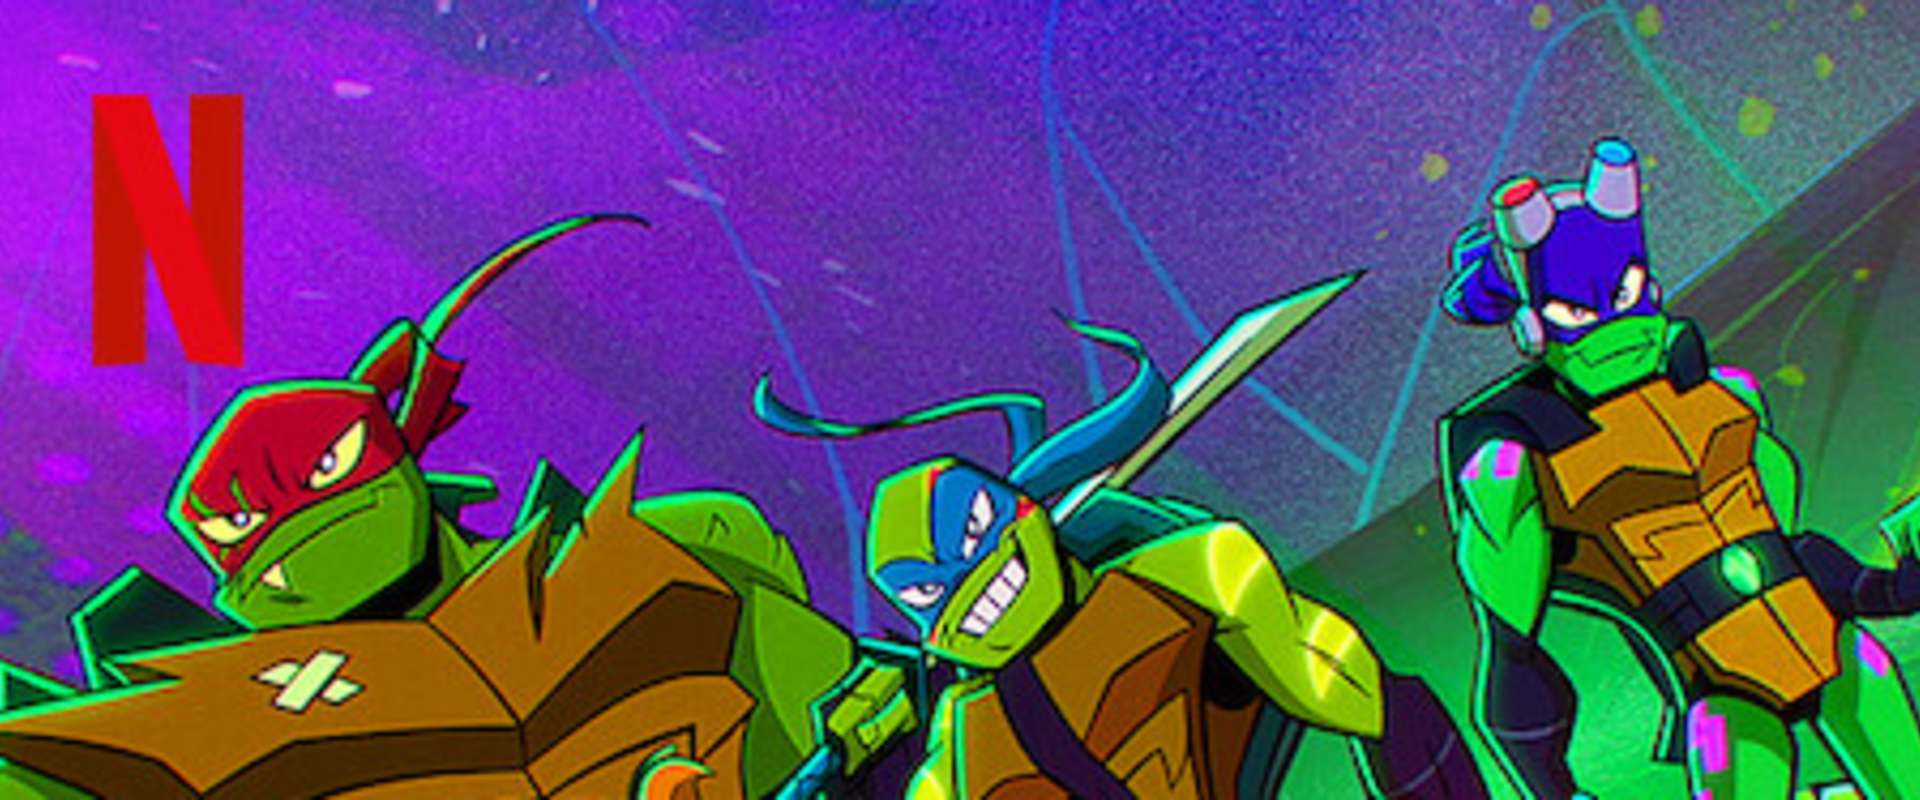 Rise of the Teenage Mutant Ninja Turtles: The Movie background 1